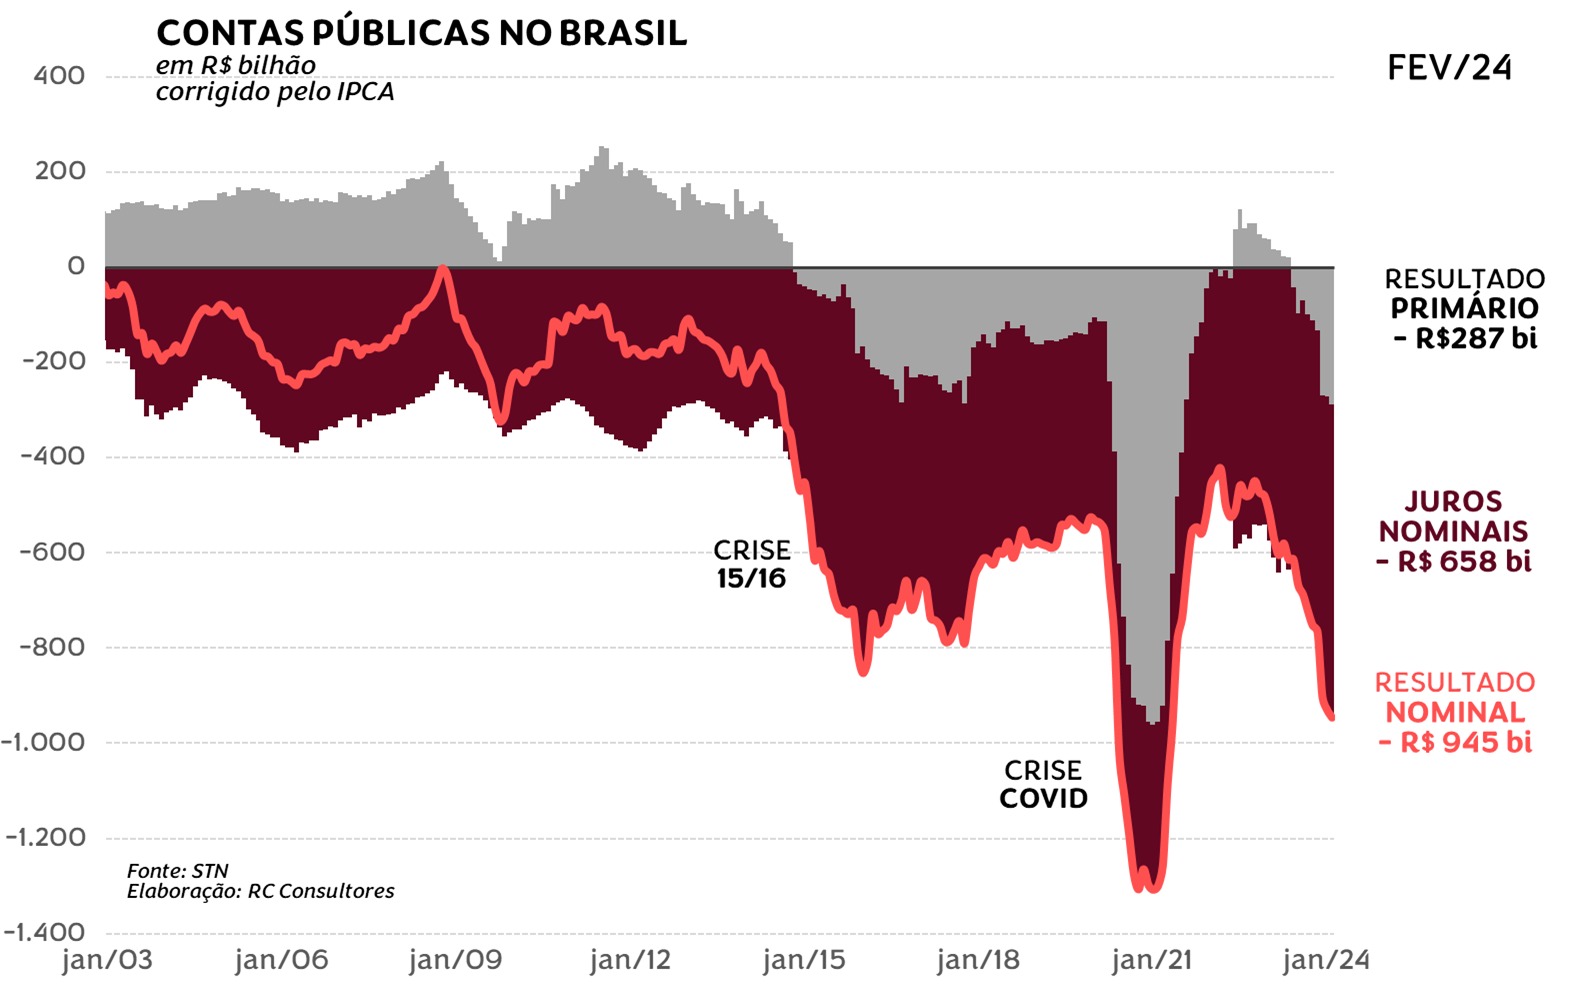 Gráfico mostra a evolução da crise fiscal no Brasil nos últimos 10 anos